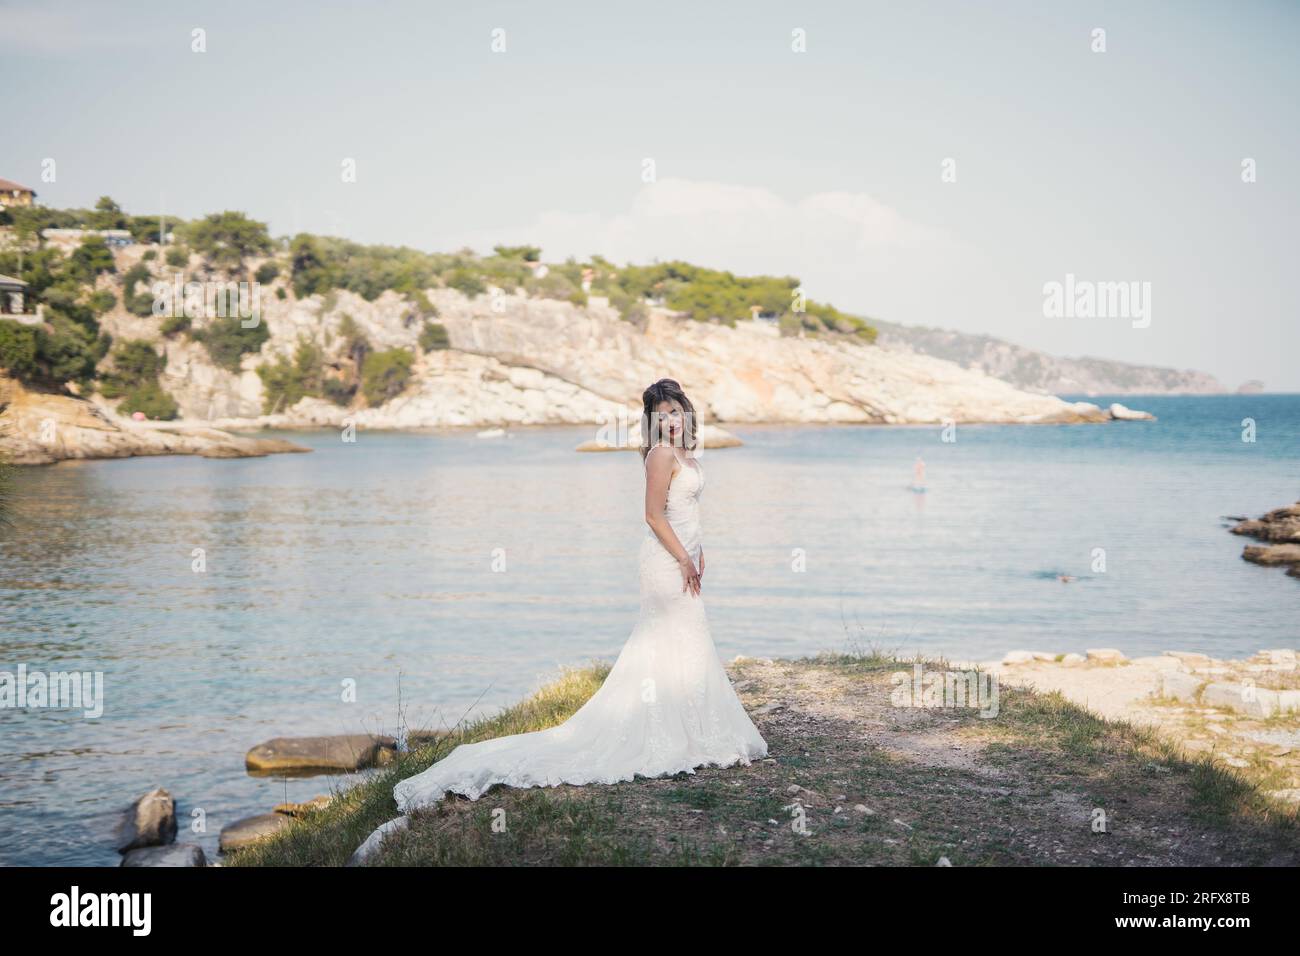 Eine wunderschöne Braut am Strand von Griechenland Foto Stock